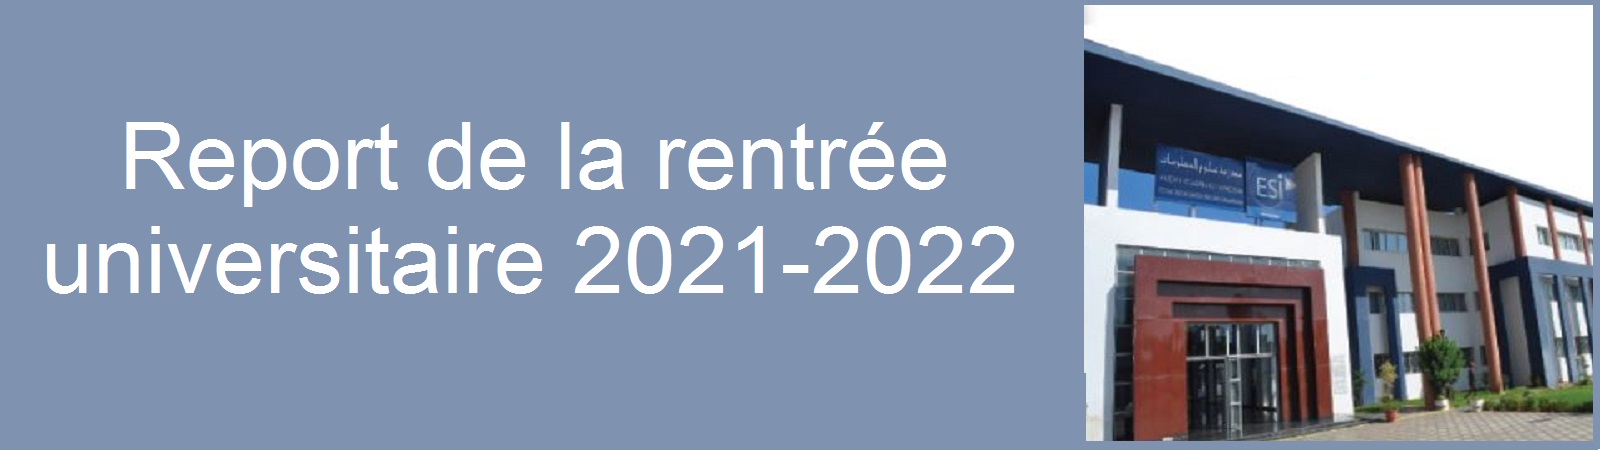 Report de la rentrée universitaire 2021-2022